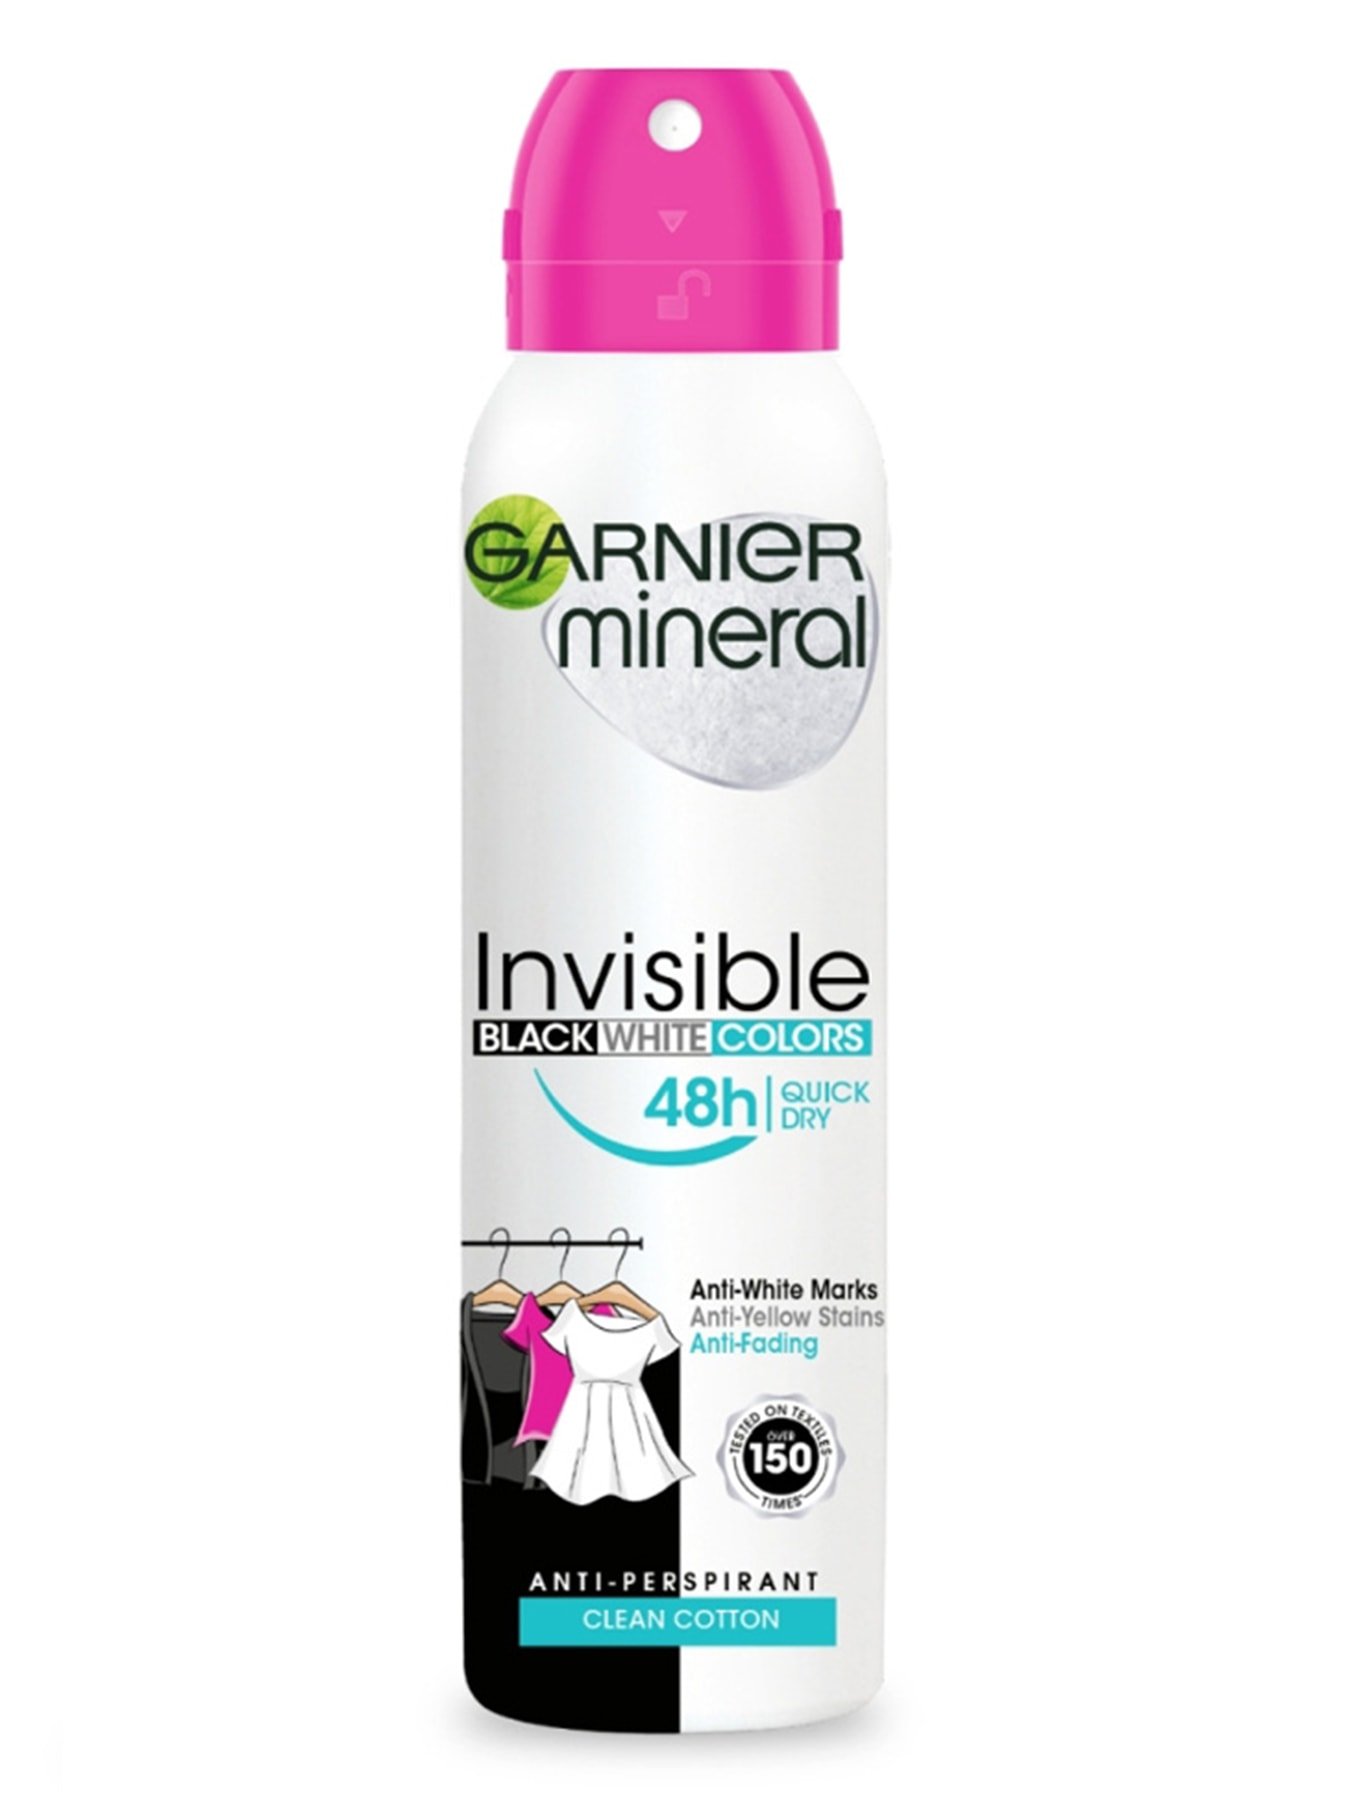 Garnier Mineral Invisible Black, White & Colors Cotton sprej 